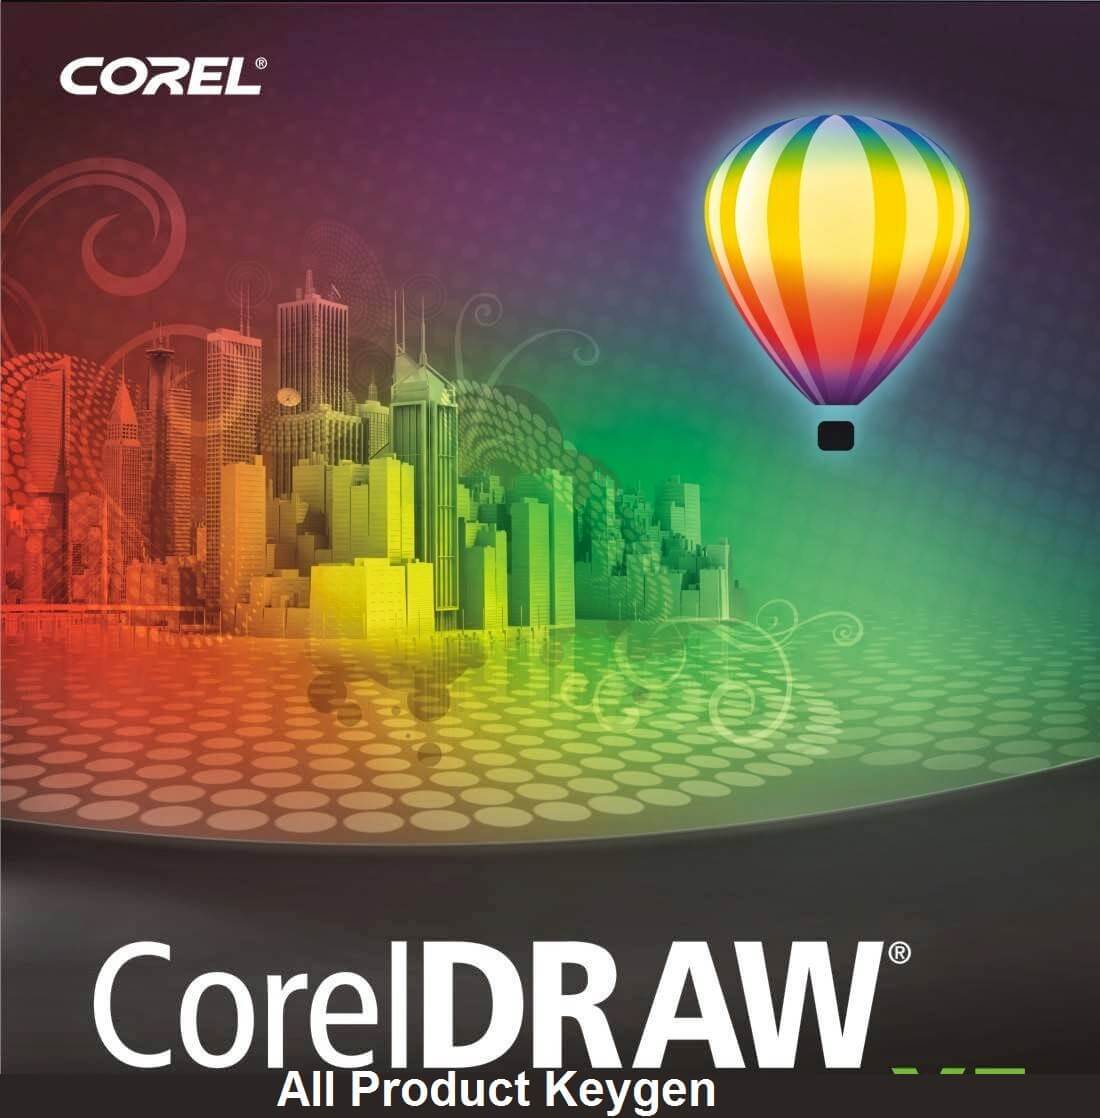 coreldraw new version 2015 free download